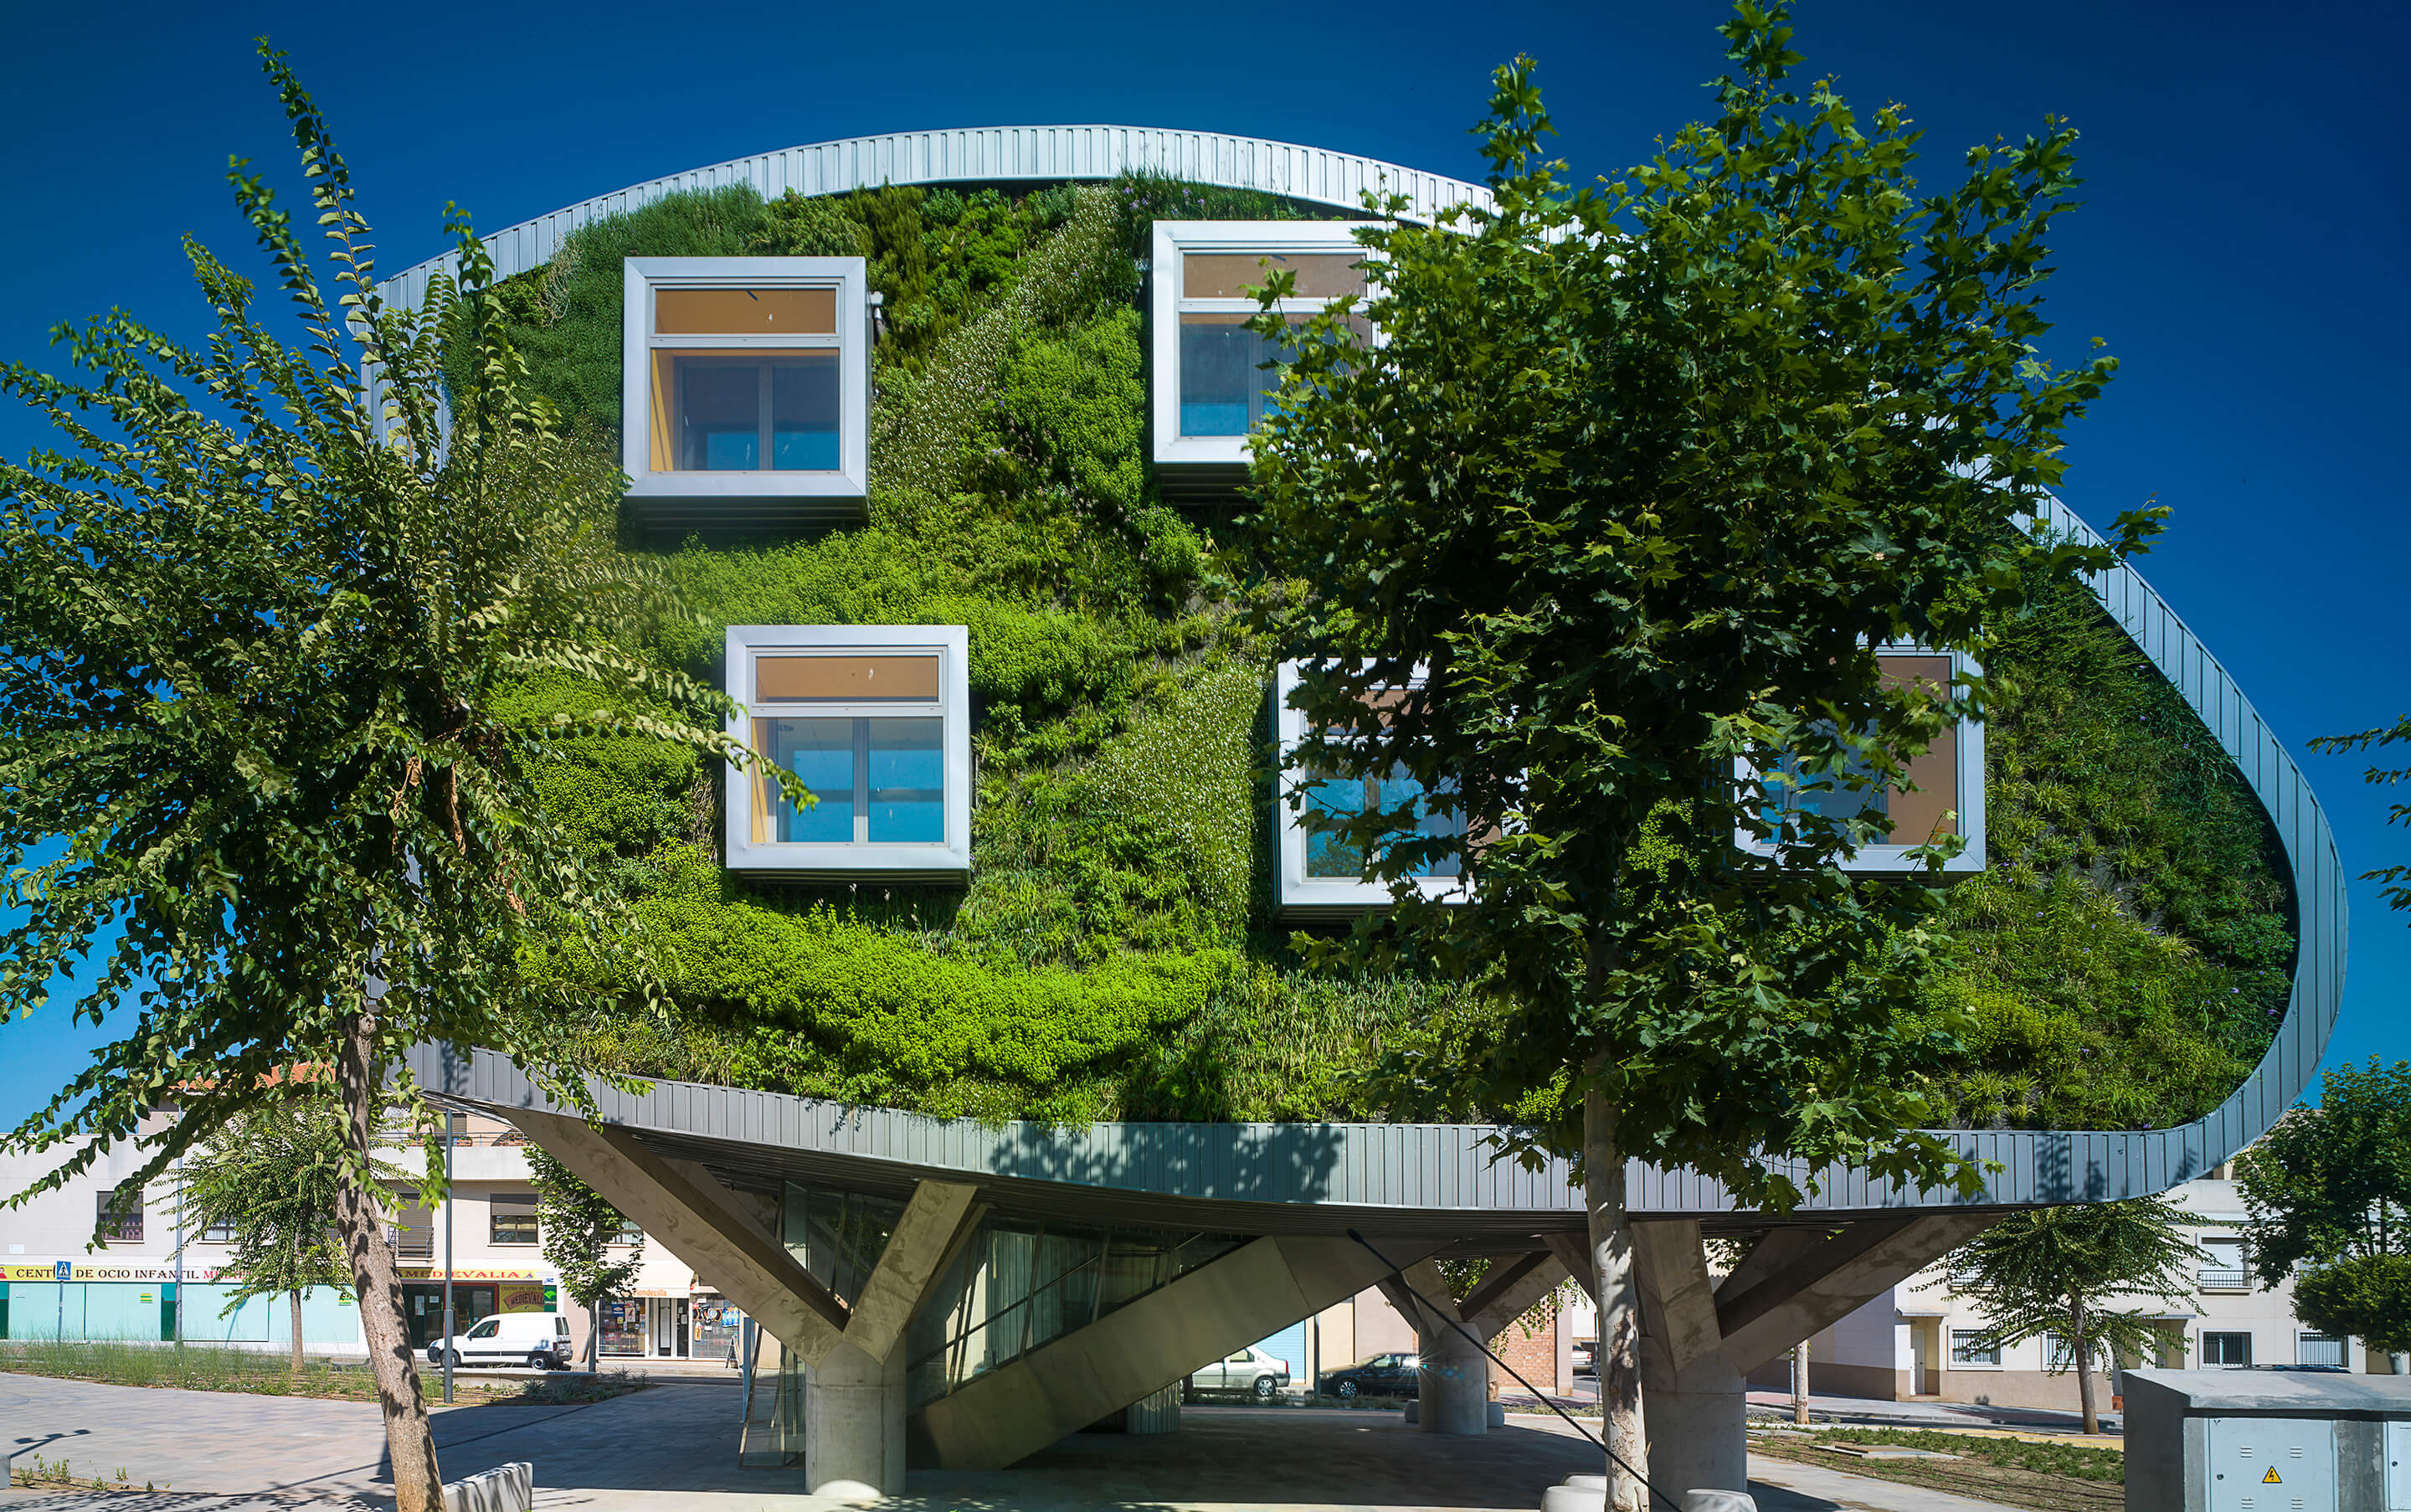 Зеленый дом. Зелёная архитектура. Офисное здание, Малага, Испания. «Зеленый дом» («Green building»). Экодома зеленая архитектура. Экостиль в архитектуре.